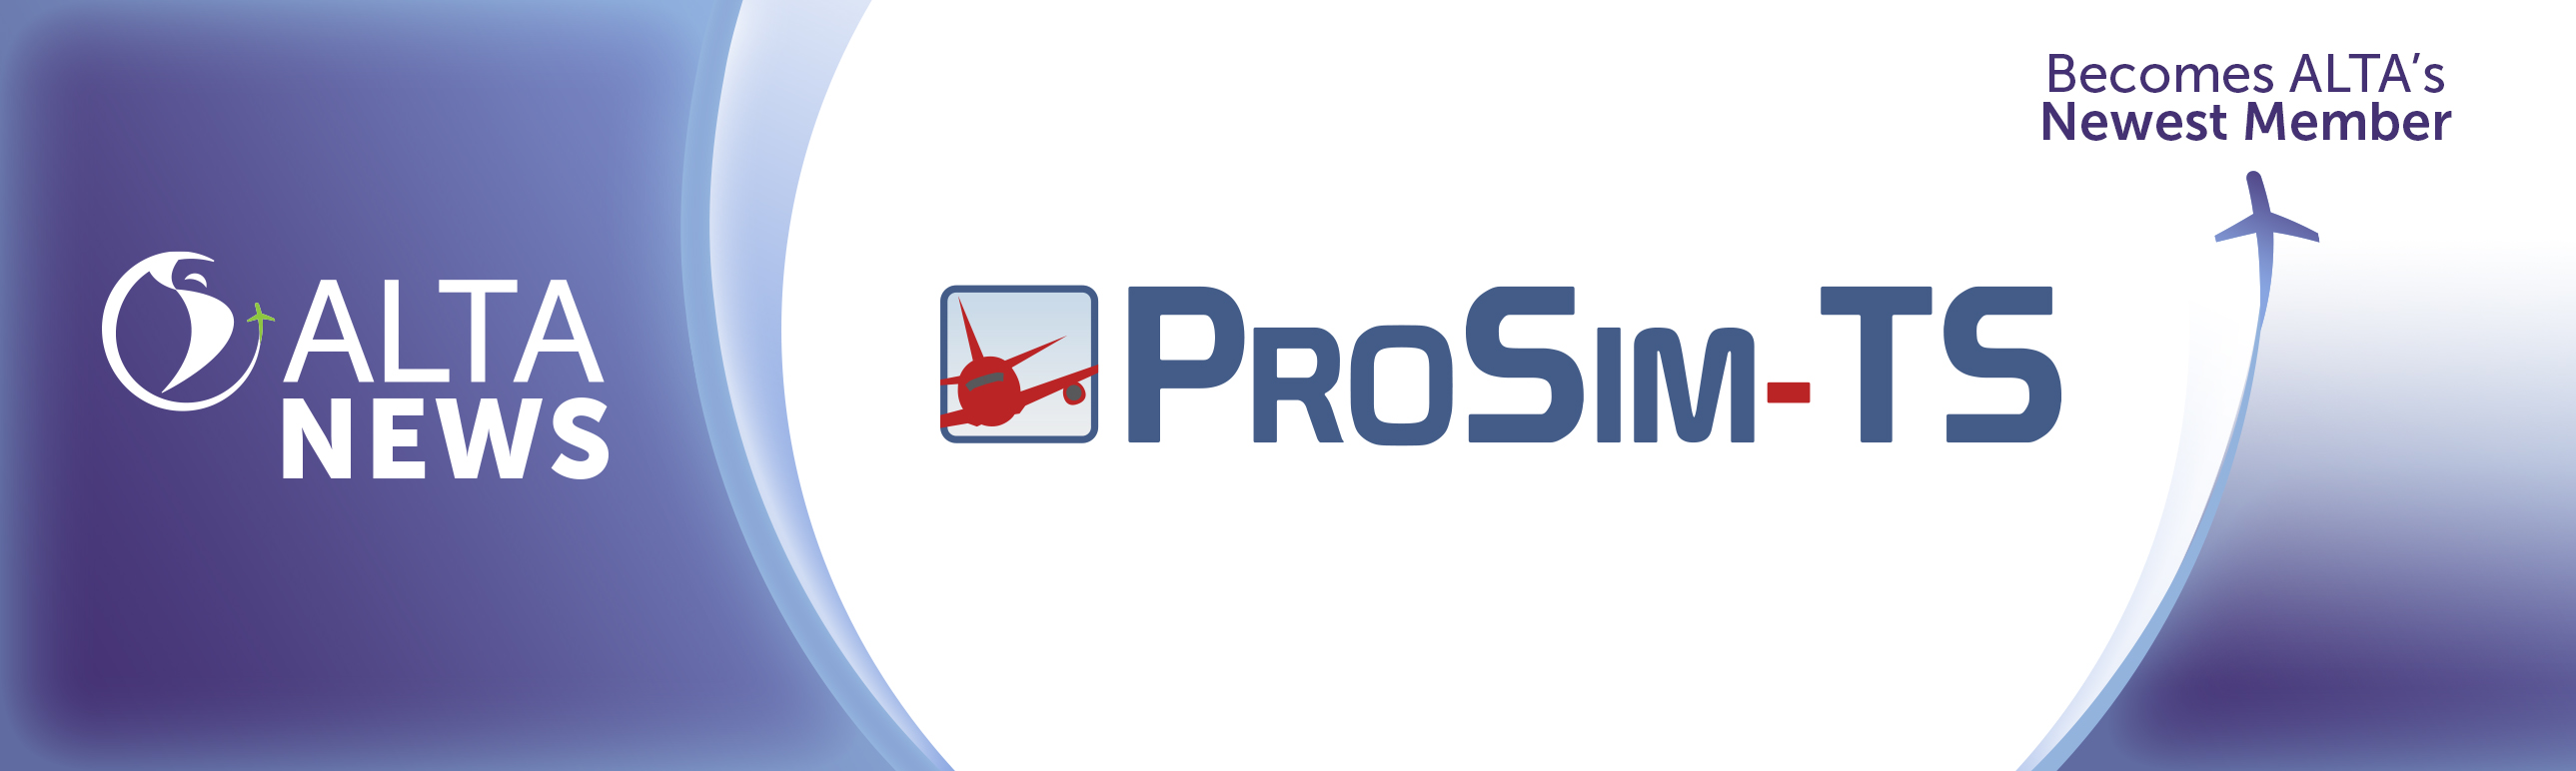 ALTA NEWS - ¡Bienvenidos a bordo ProSim Training Solutions!